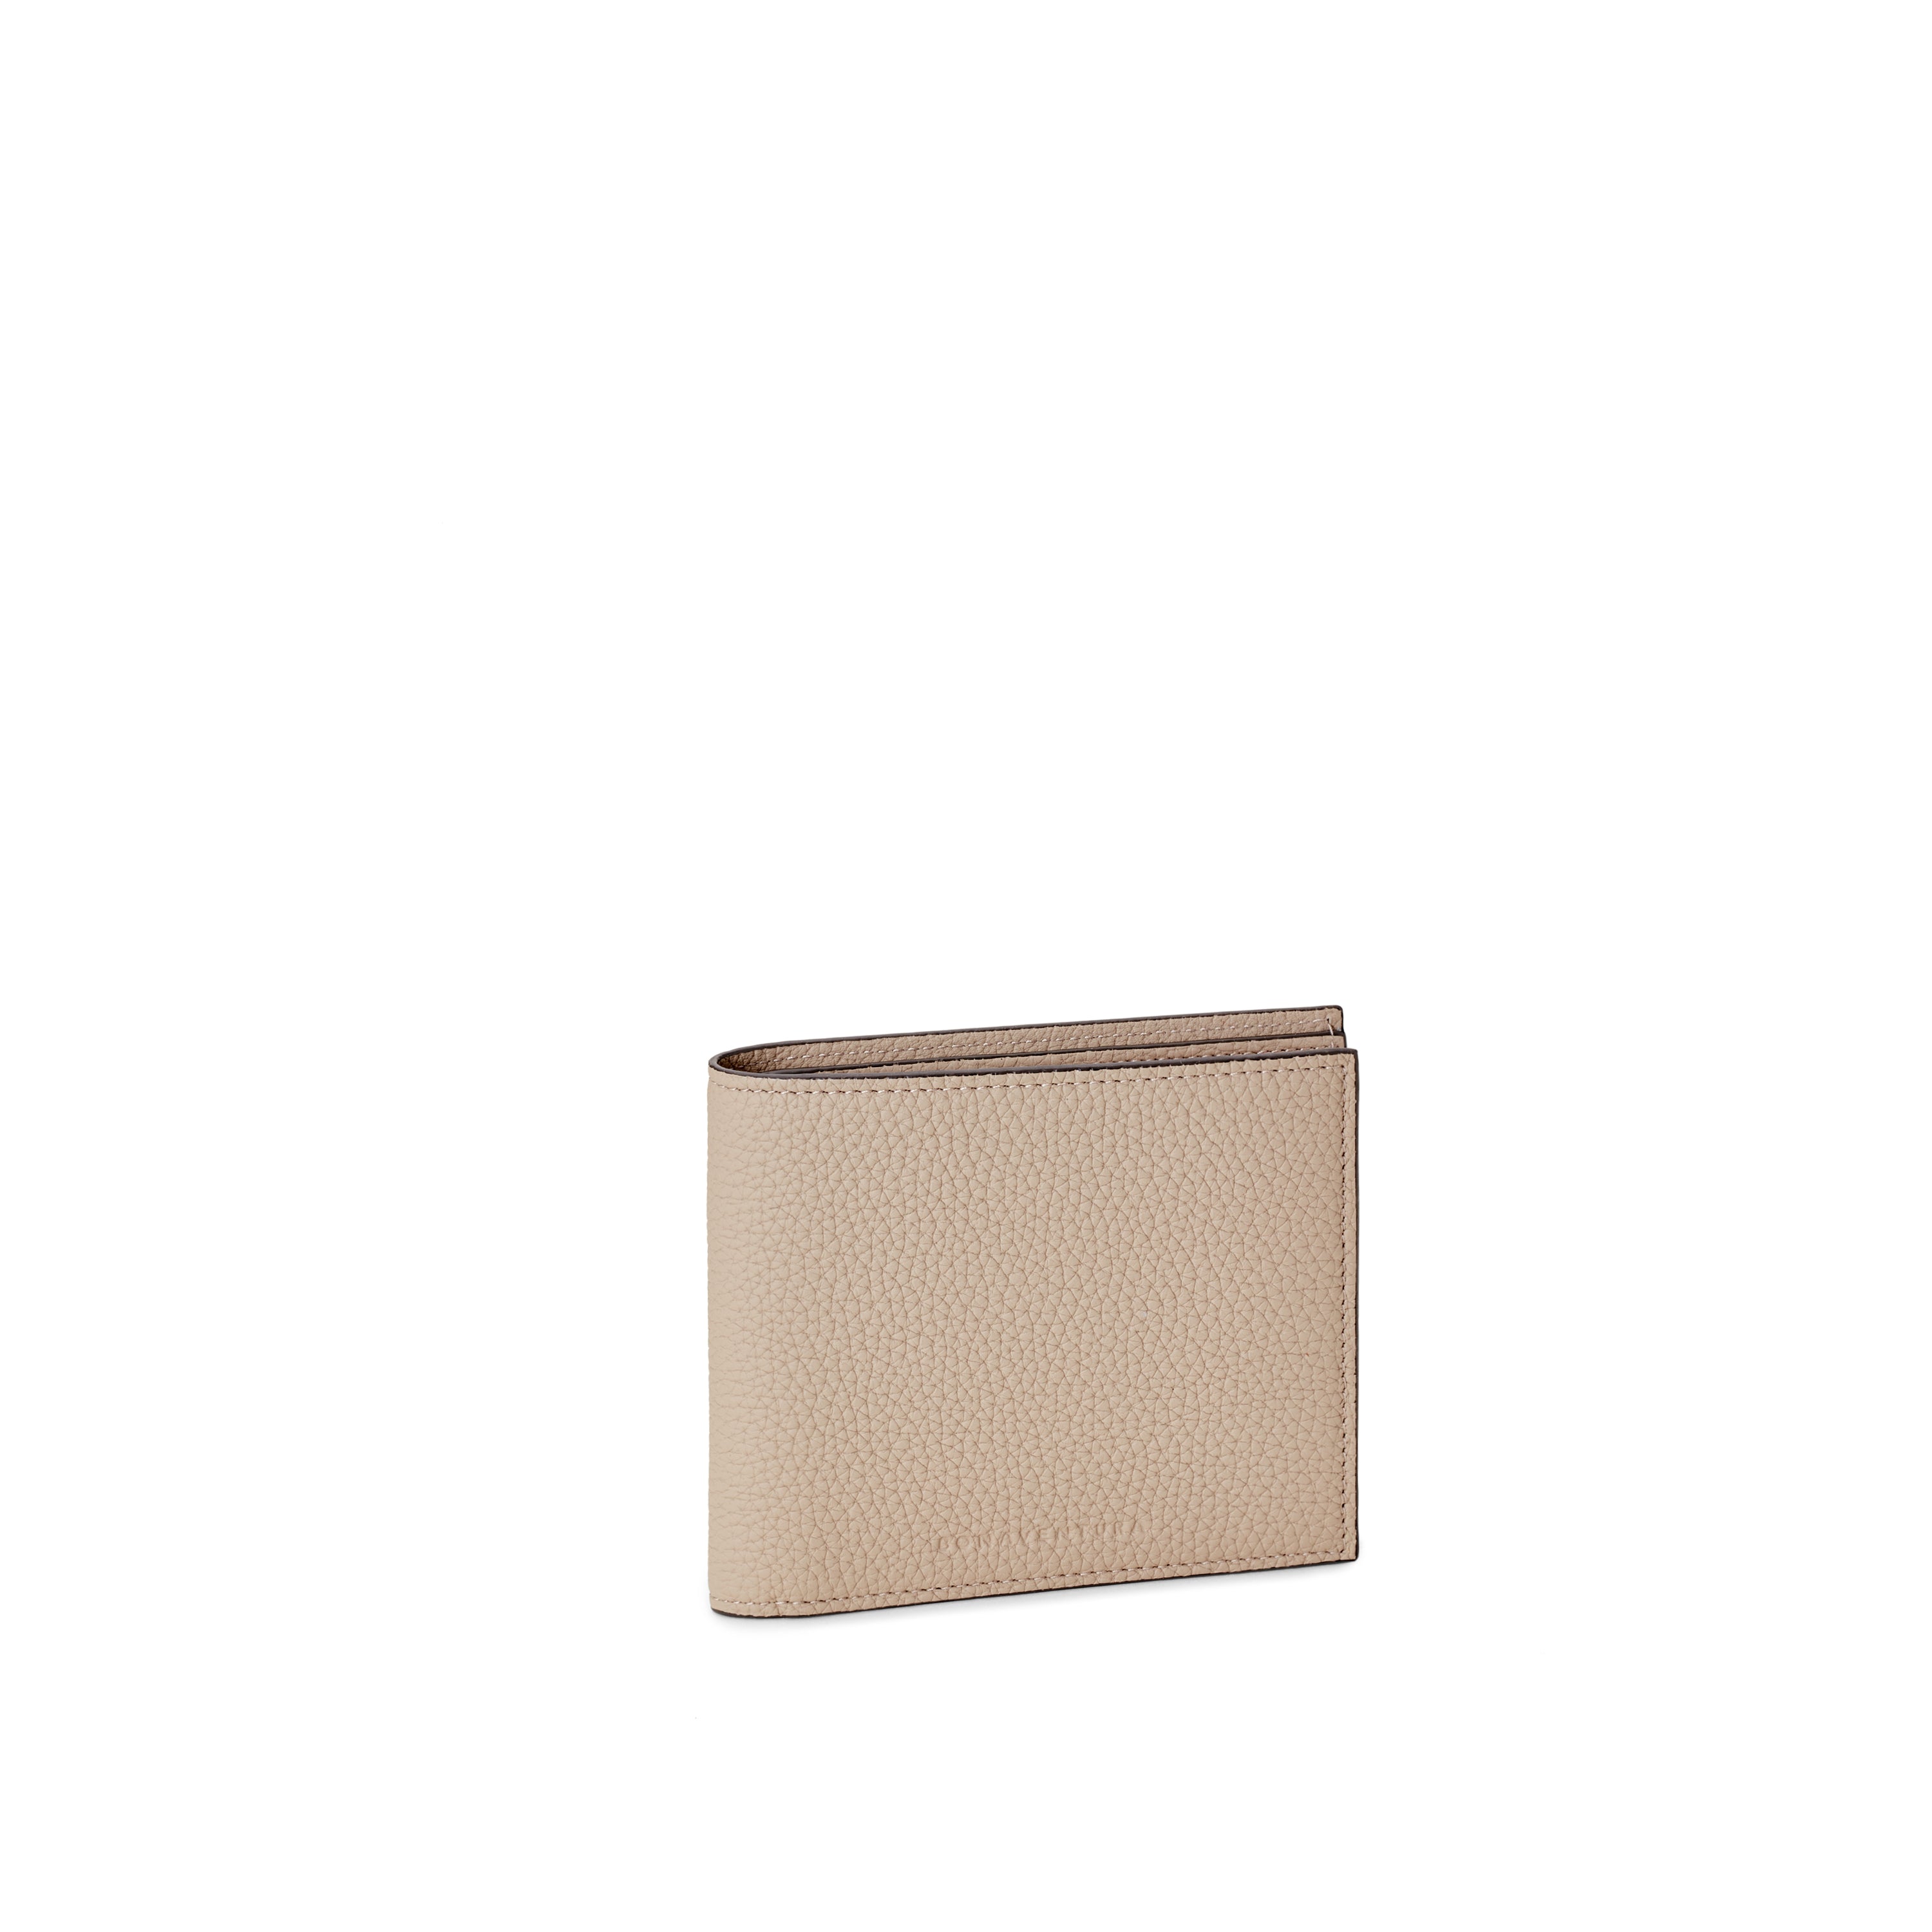 上質なレザーのレディース財布 – イタリア(ミラノ)発の高級革製品の